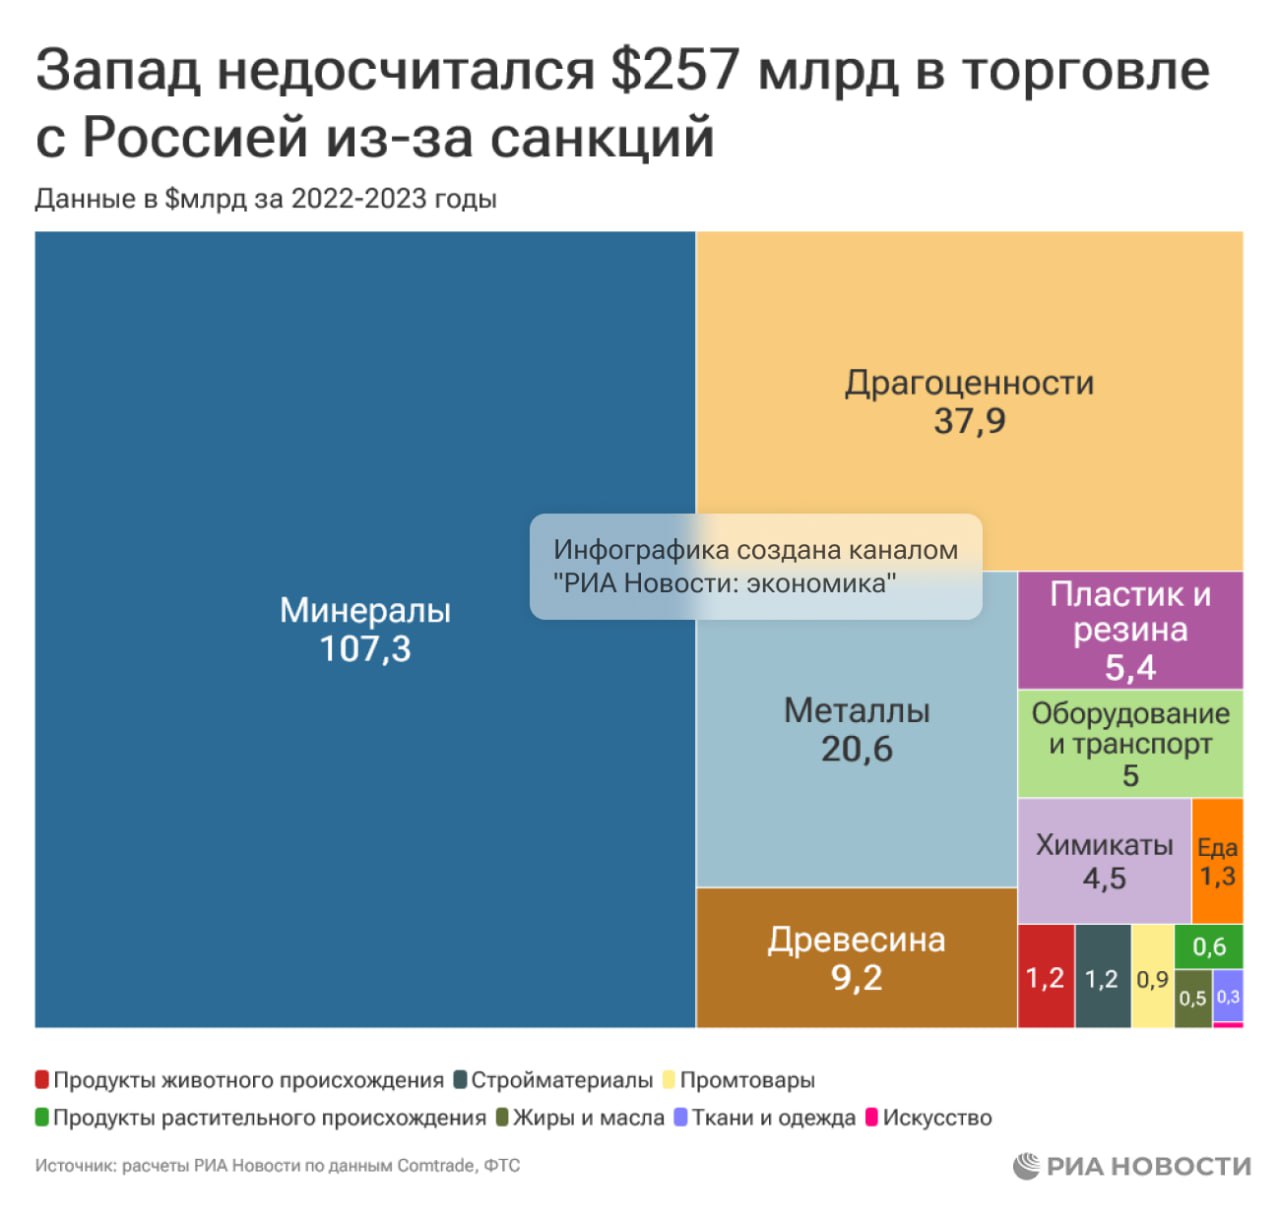 Запад за два года действия санкций недополучил российских товаров почти на 21 трлн рублей, или $257 млрд.   При этом Россия смогла перенаправить товары на эту сумму другим государствам и даже получила выгоду в 1,1 трлн рублей, или $31 млрд, подсчитало РИА Новости.